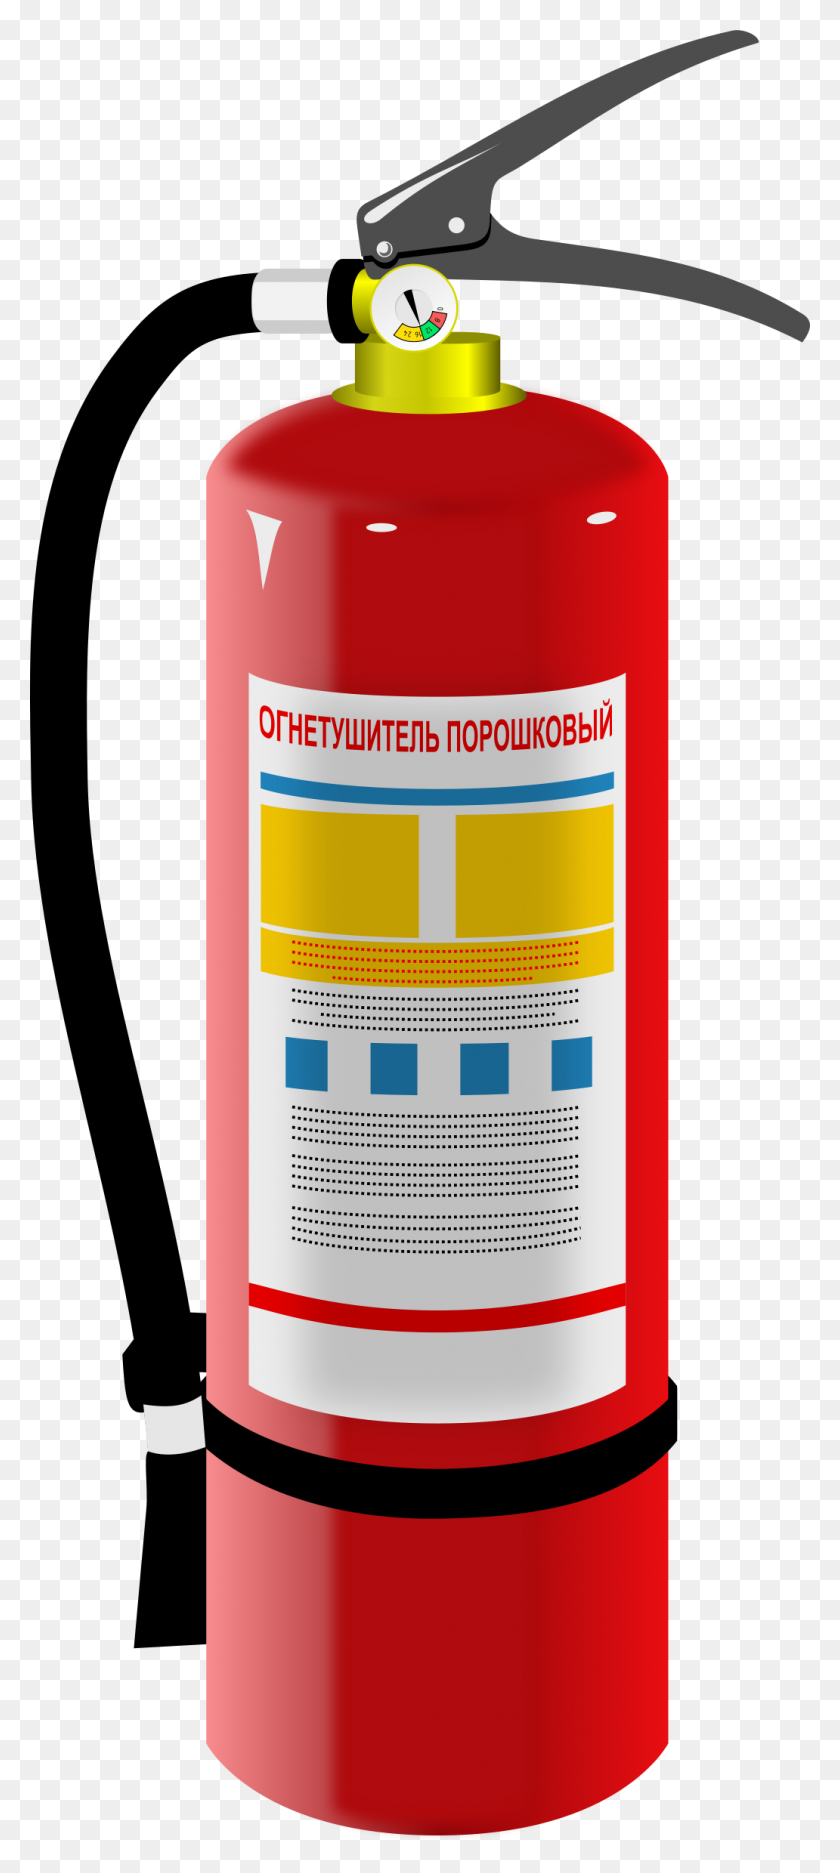 1032x2400 Clipart De Extintor De Incendios - Clipart De Extintor De Incendios